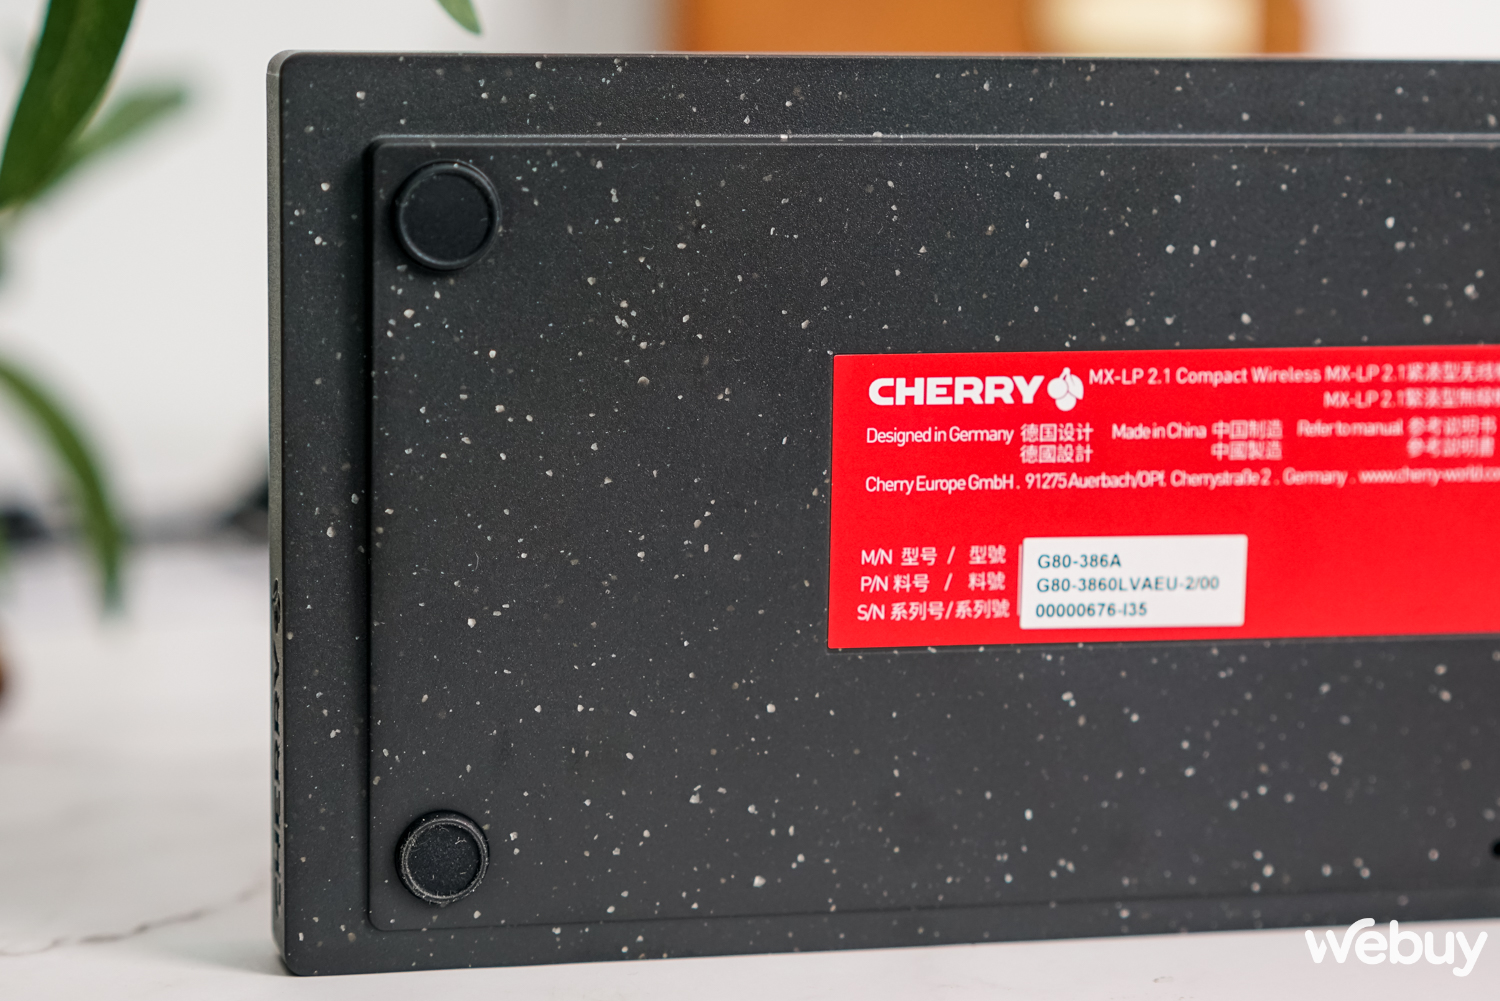 Trải nghiệm bàn phím Cherry MX-LP 2.1: Mỏng, nhẹ, switch cho cảm giác gõ cứng cáp - Ảnh 11.